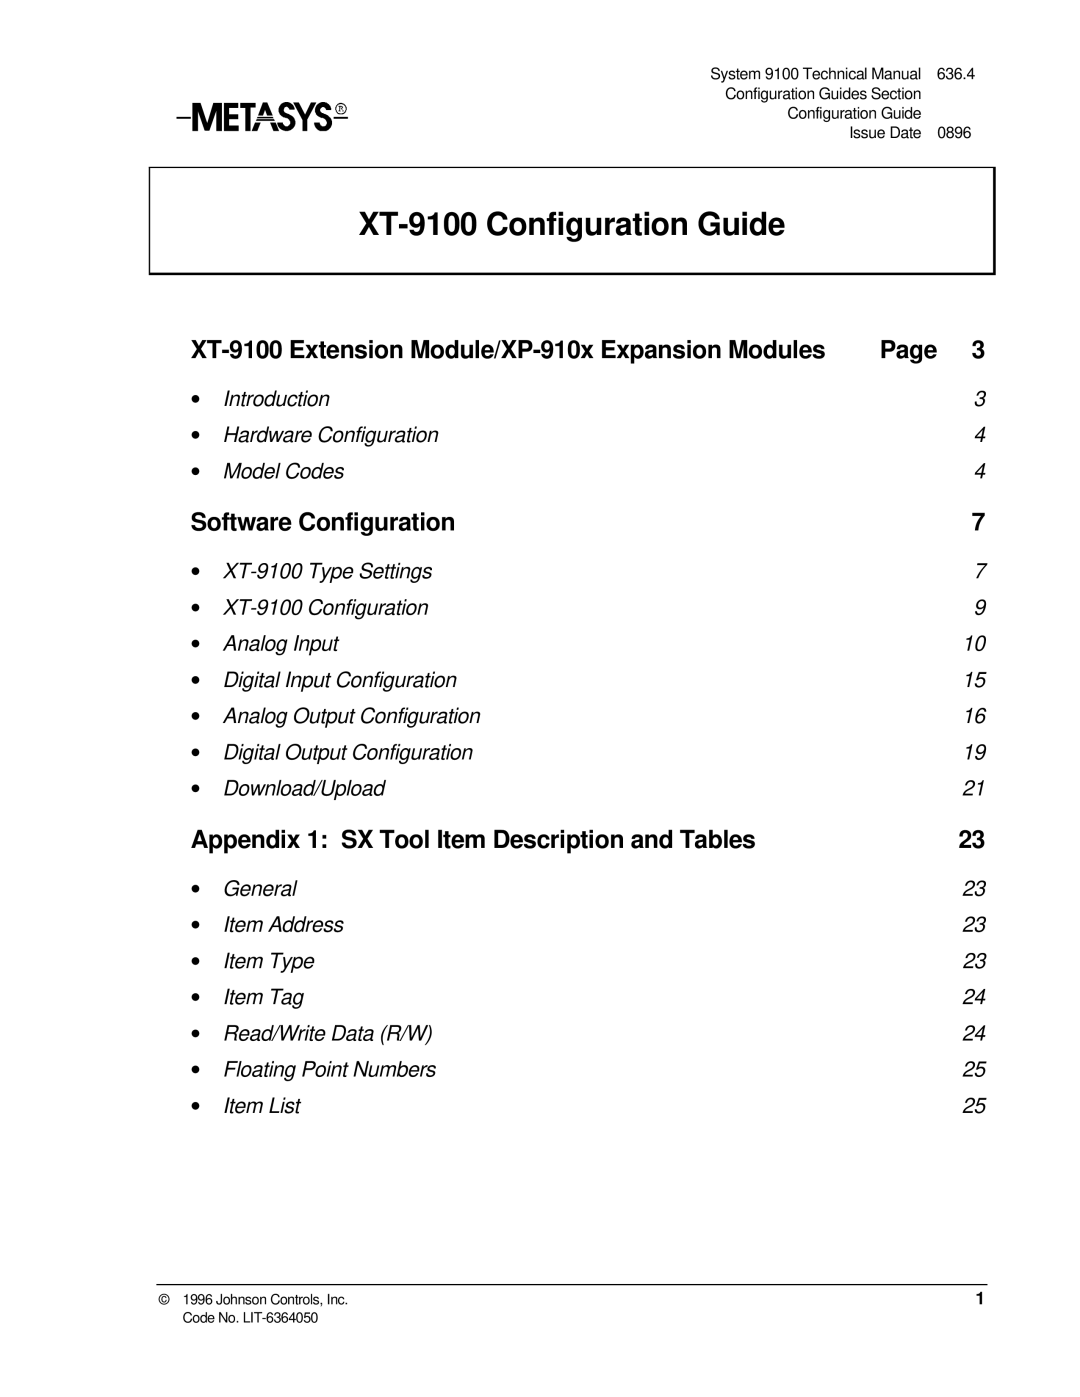 Johnson Controls appendix XT-9100 Configuration Guide, XT-9100 Extension Module/XP-910x Expansion Modules, Page 